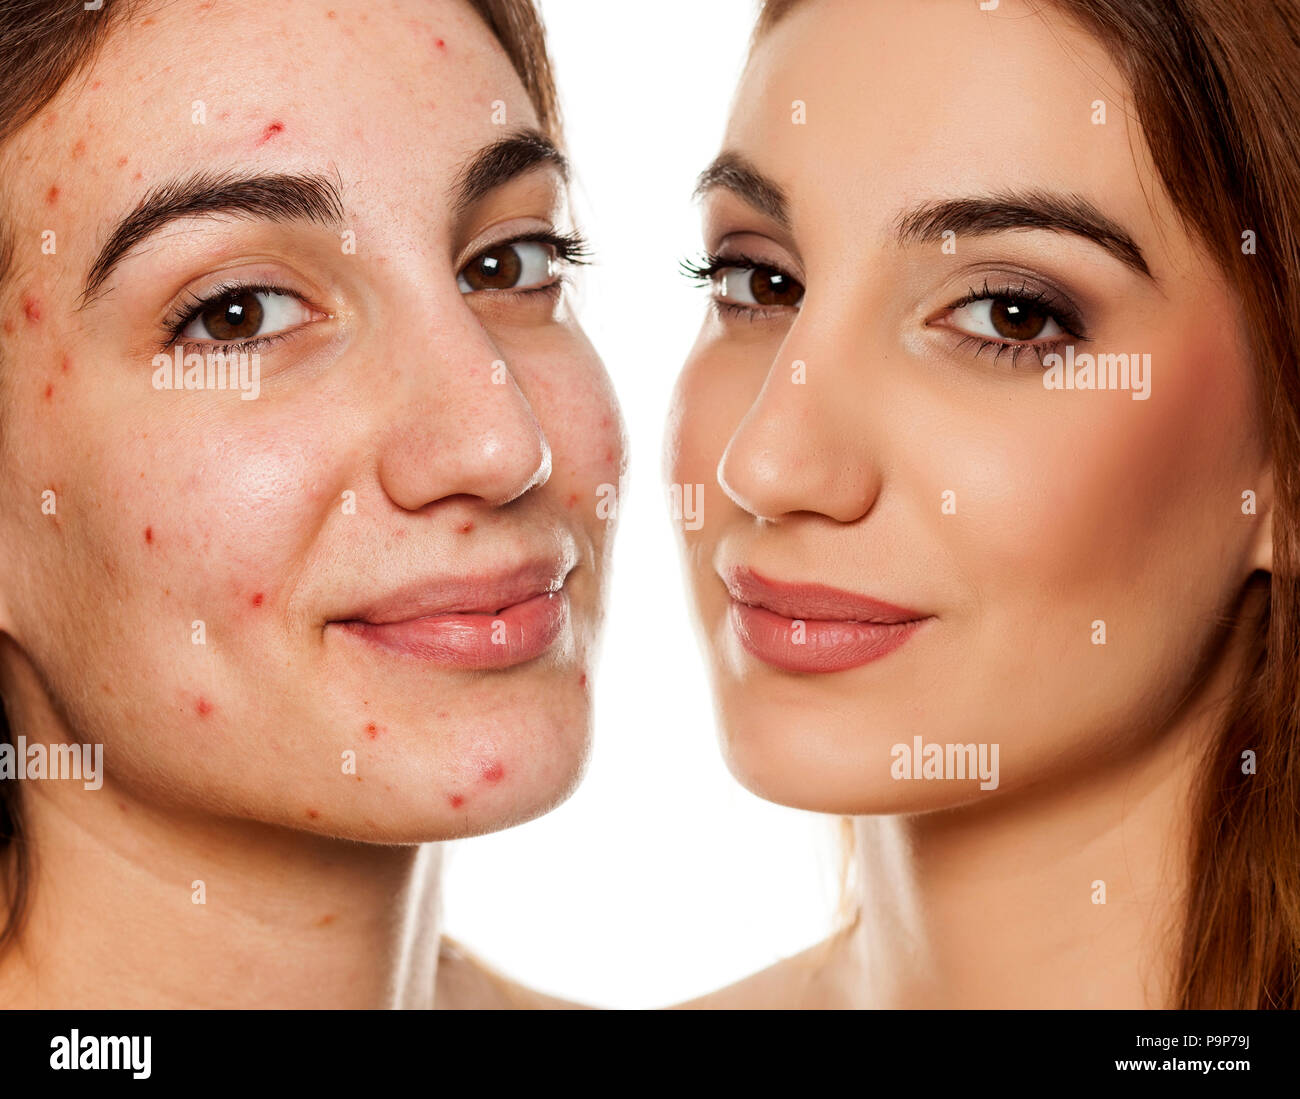 Vergleich Porträt der gleichen Frau vor und nach der kosmetischen Behandlung und Make-up auf weißem Hintergrund Stockfoto